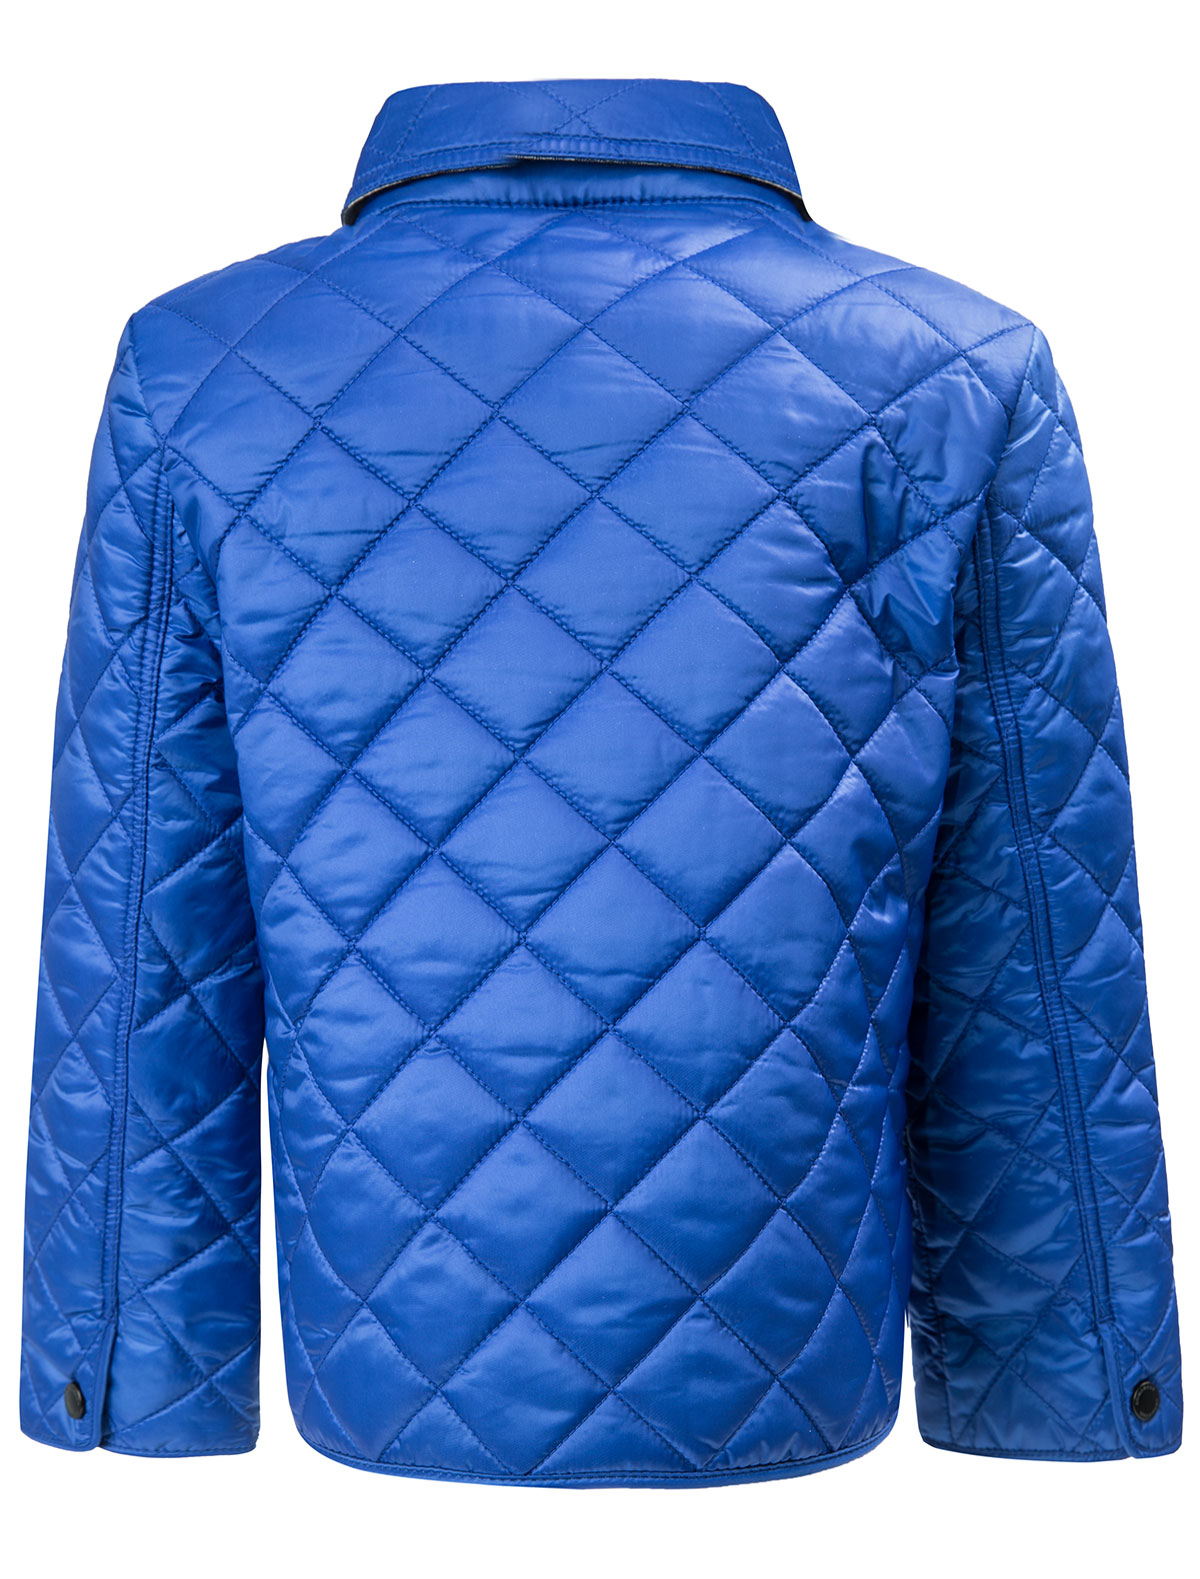 Синяя стеганая куртка. Куртка Барбери синий. Куртка синяя Burberry женская of: 10002830. Синяя куртка Burberry. Куртка Burberry женская синяя.